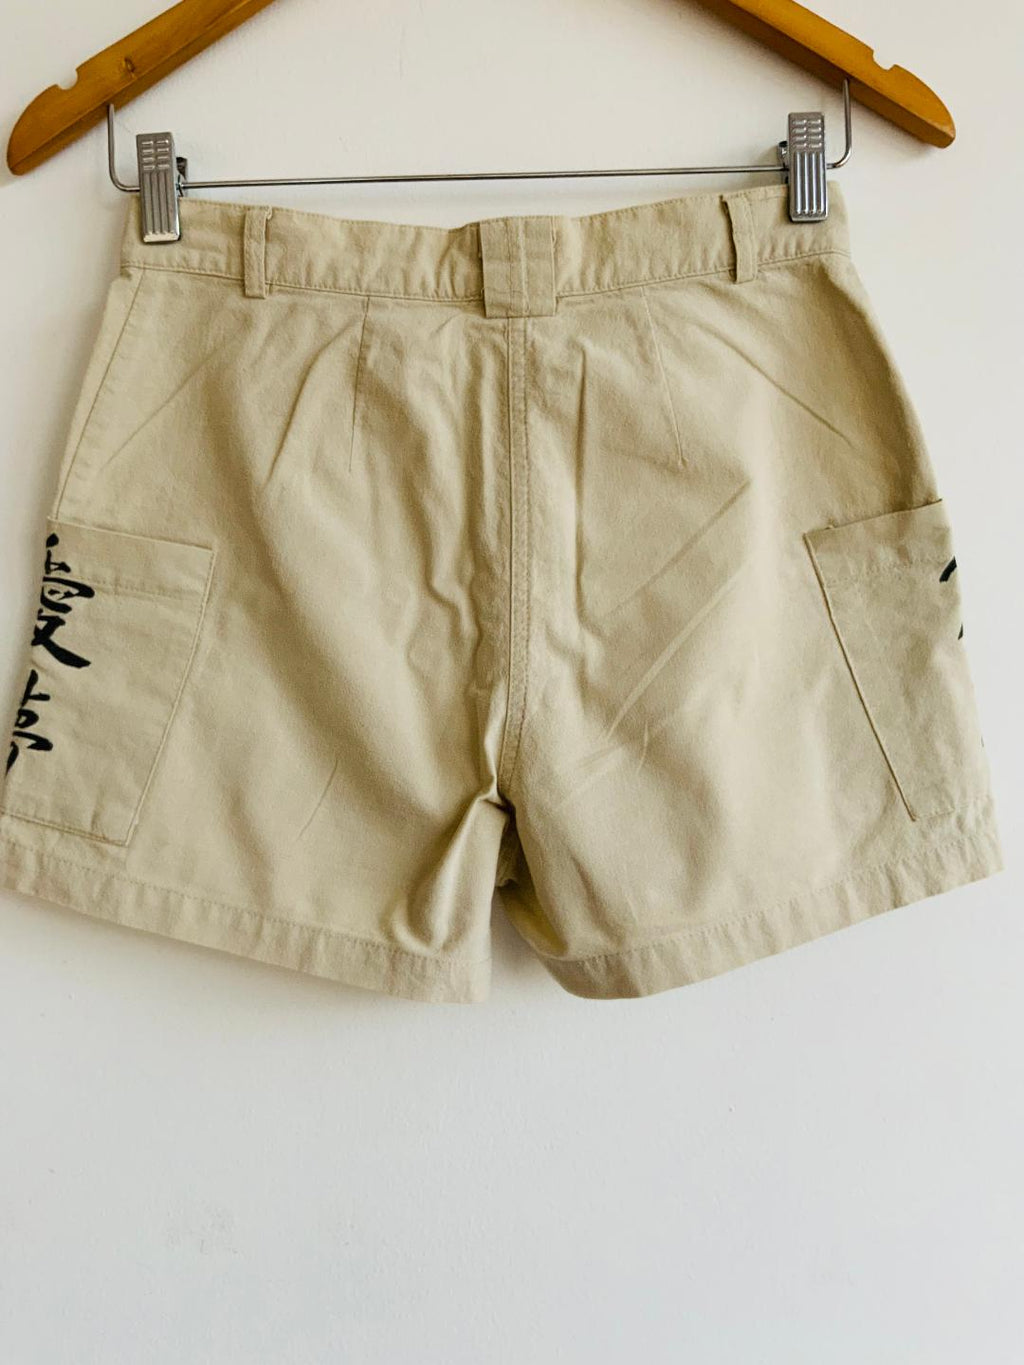 AZUCAR Short en tela tipo lino con bolsillos estampados. Talla 7